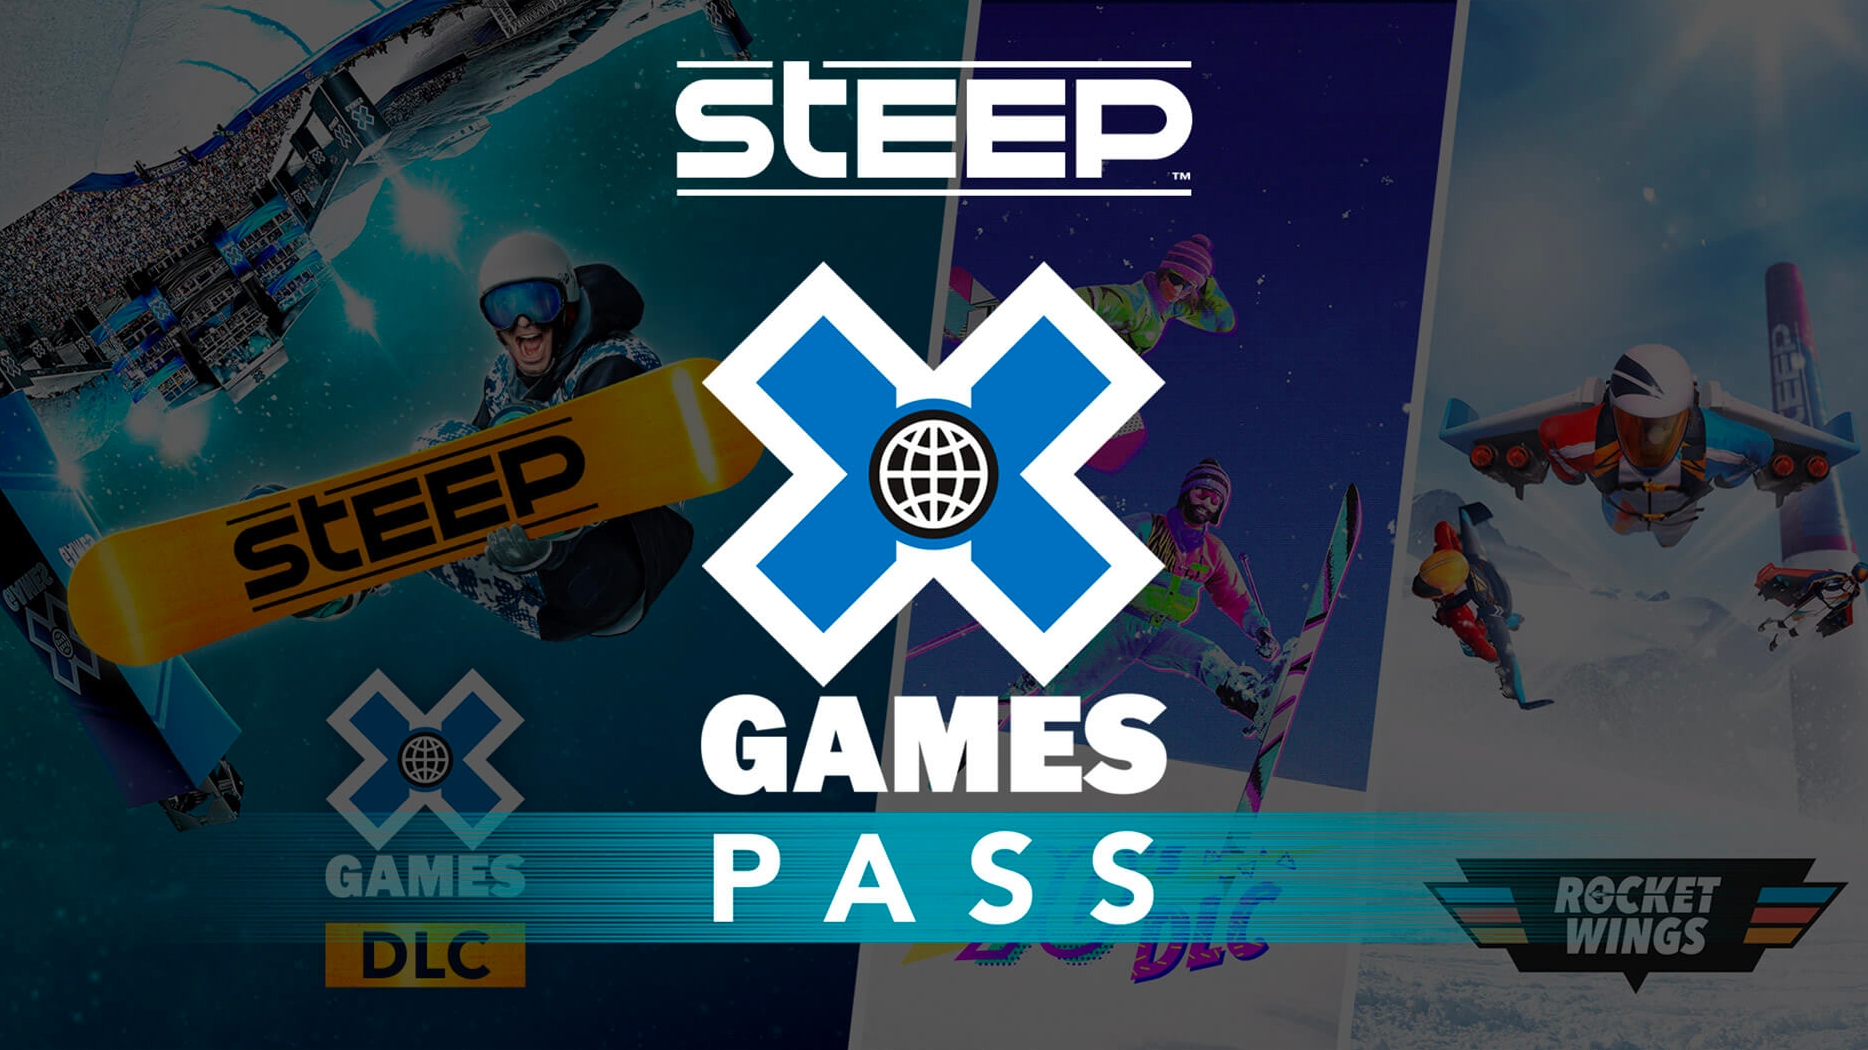 X games pass. Игра steep на Nintendo. Steep x games Pass. Steep™ – Winterfest Pack (DLC).